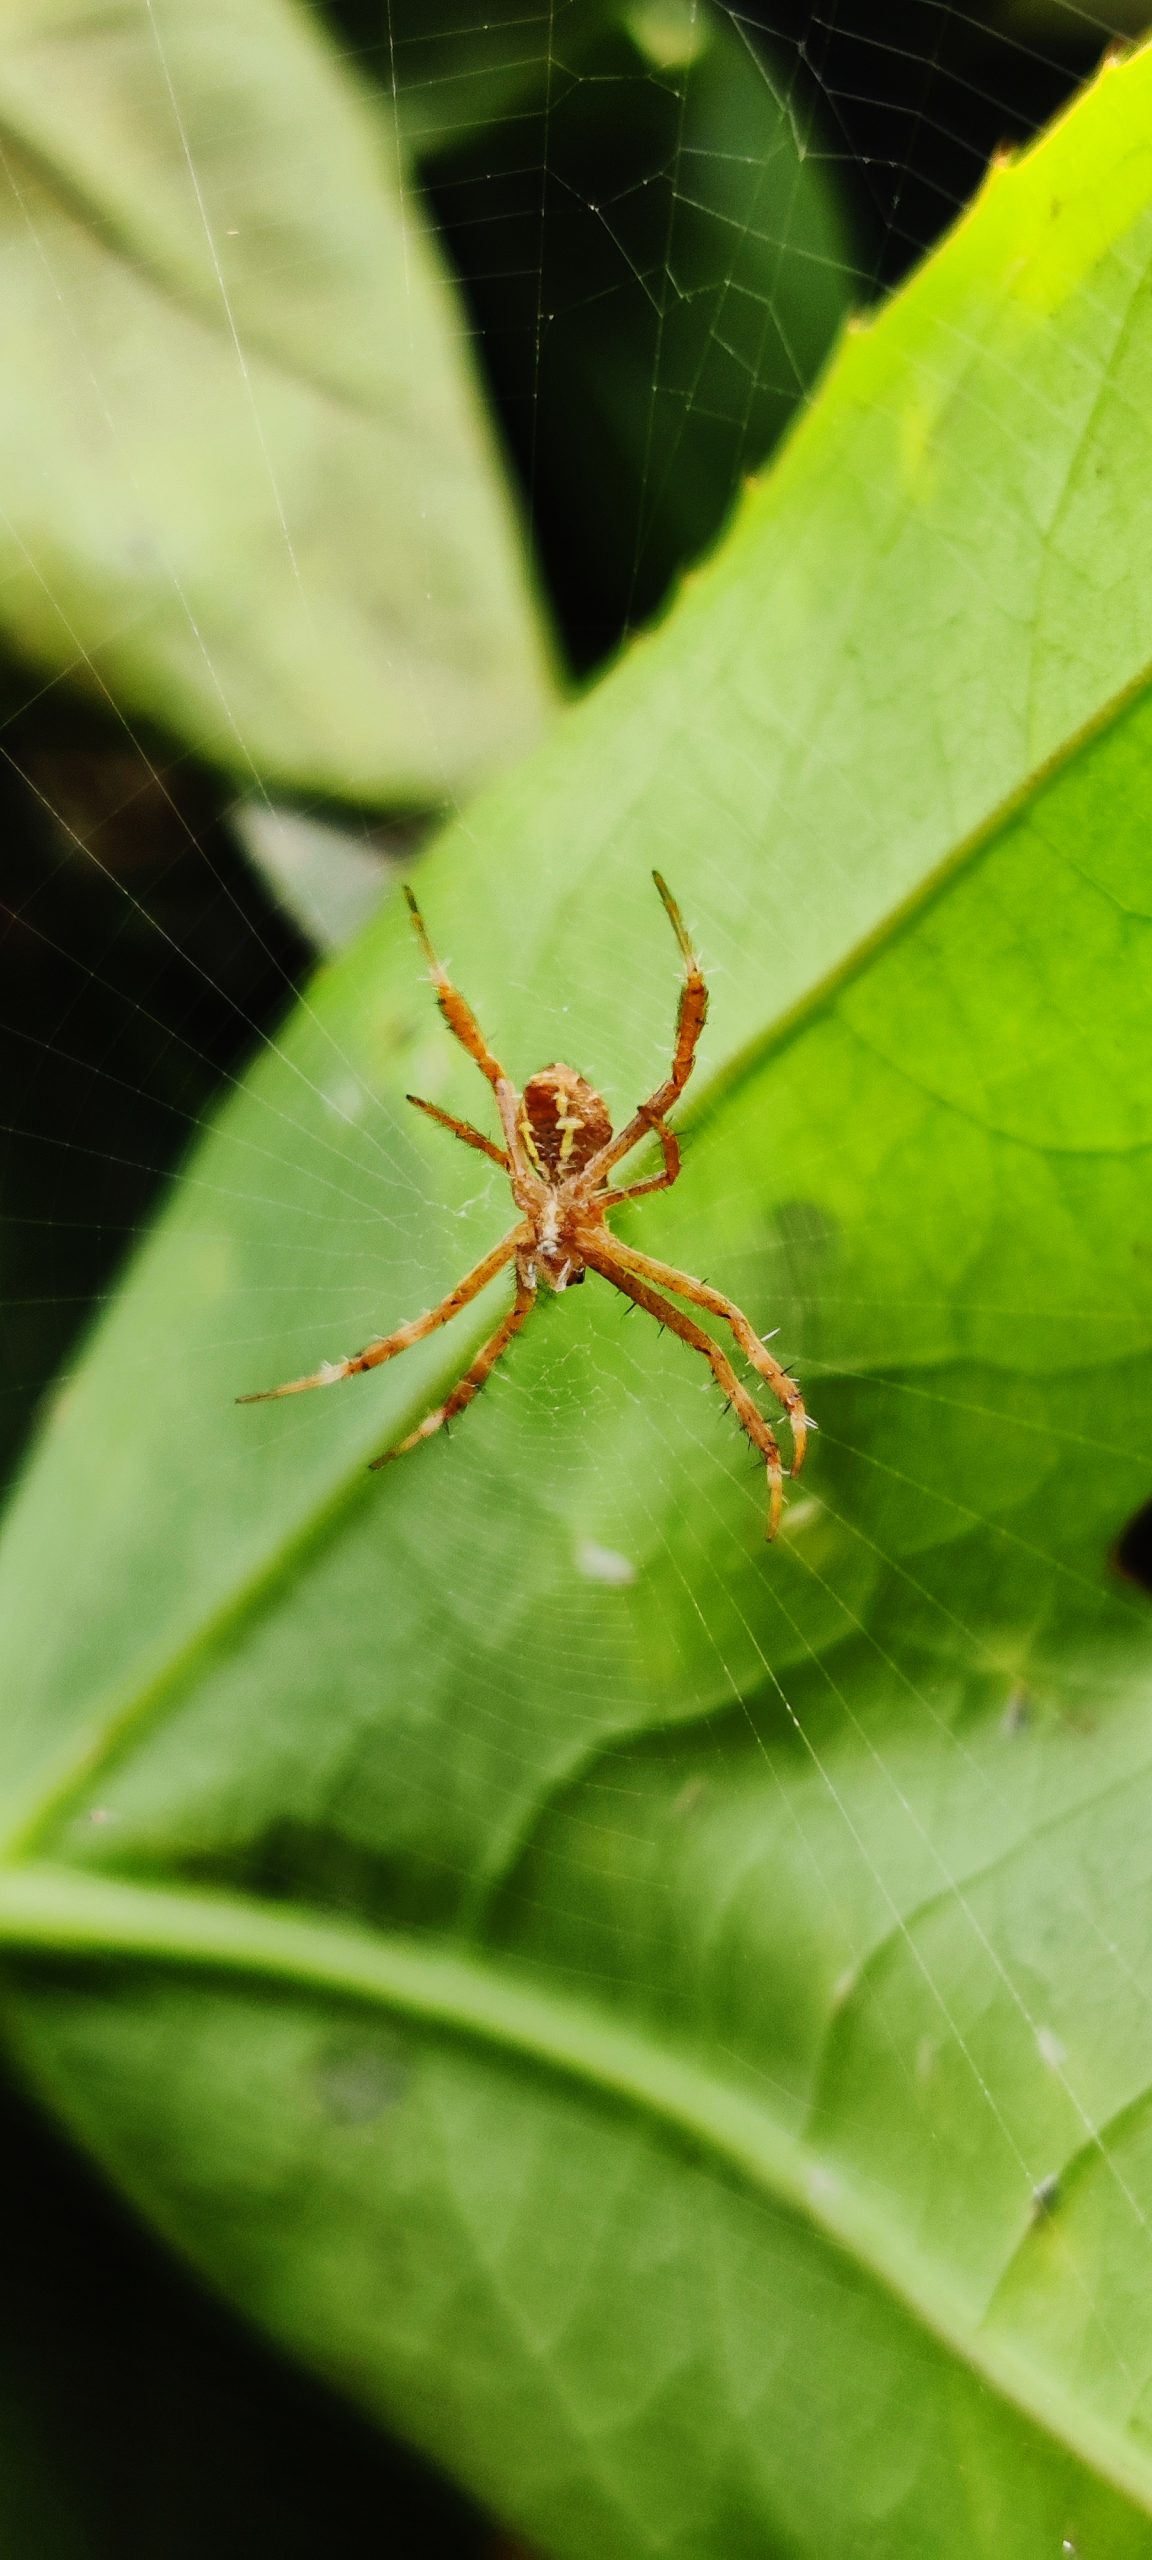 Spider on Spider web